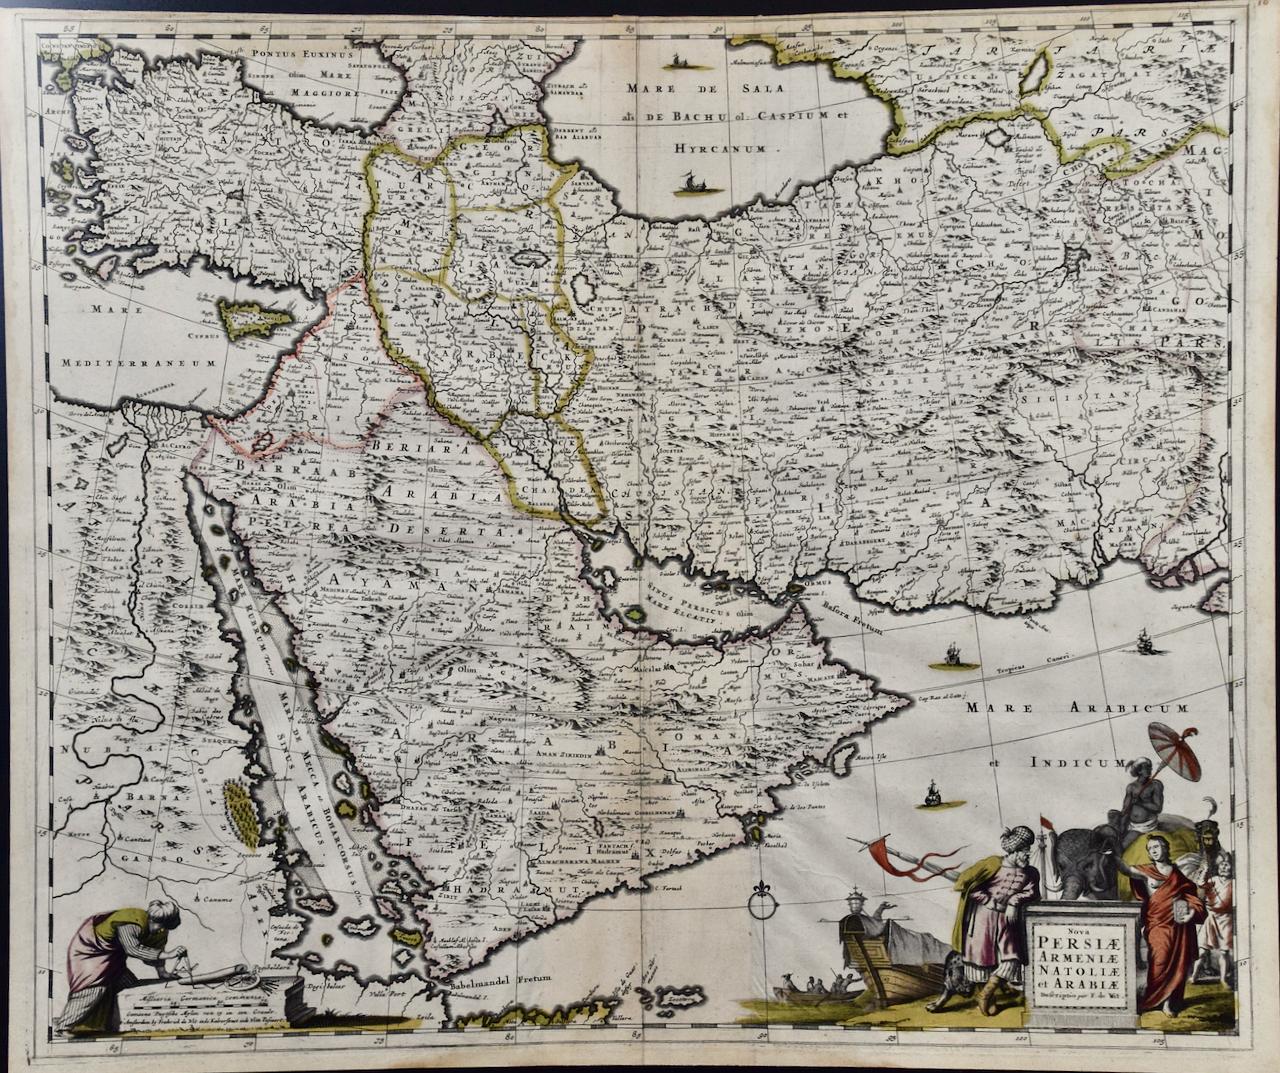 Une carte colorée à la main du XVIIe siècle représentant la Perse, l'Arménie et les régions adjacentes par De Wit  - Print de Frederick de Wit